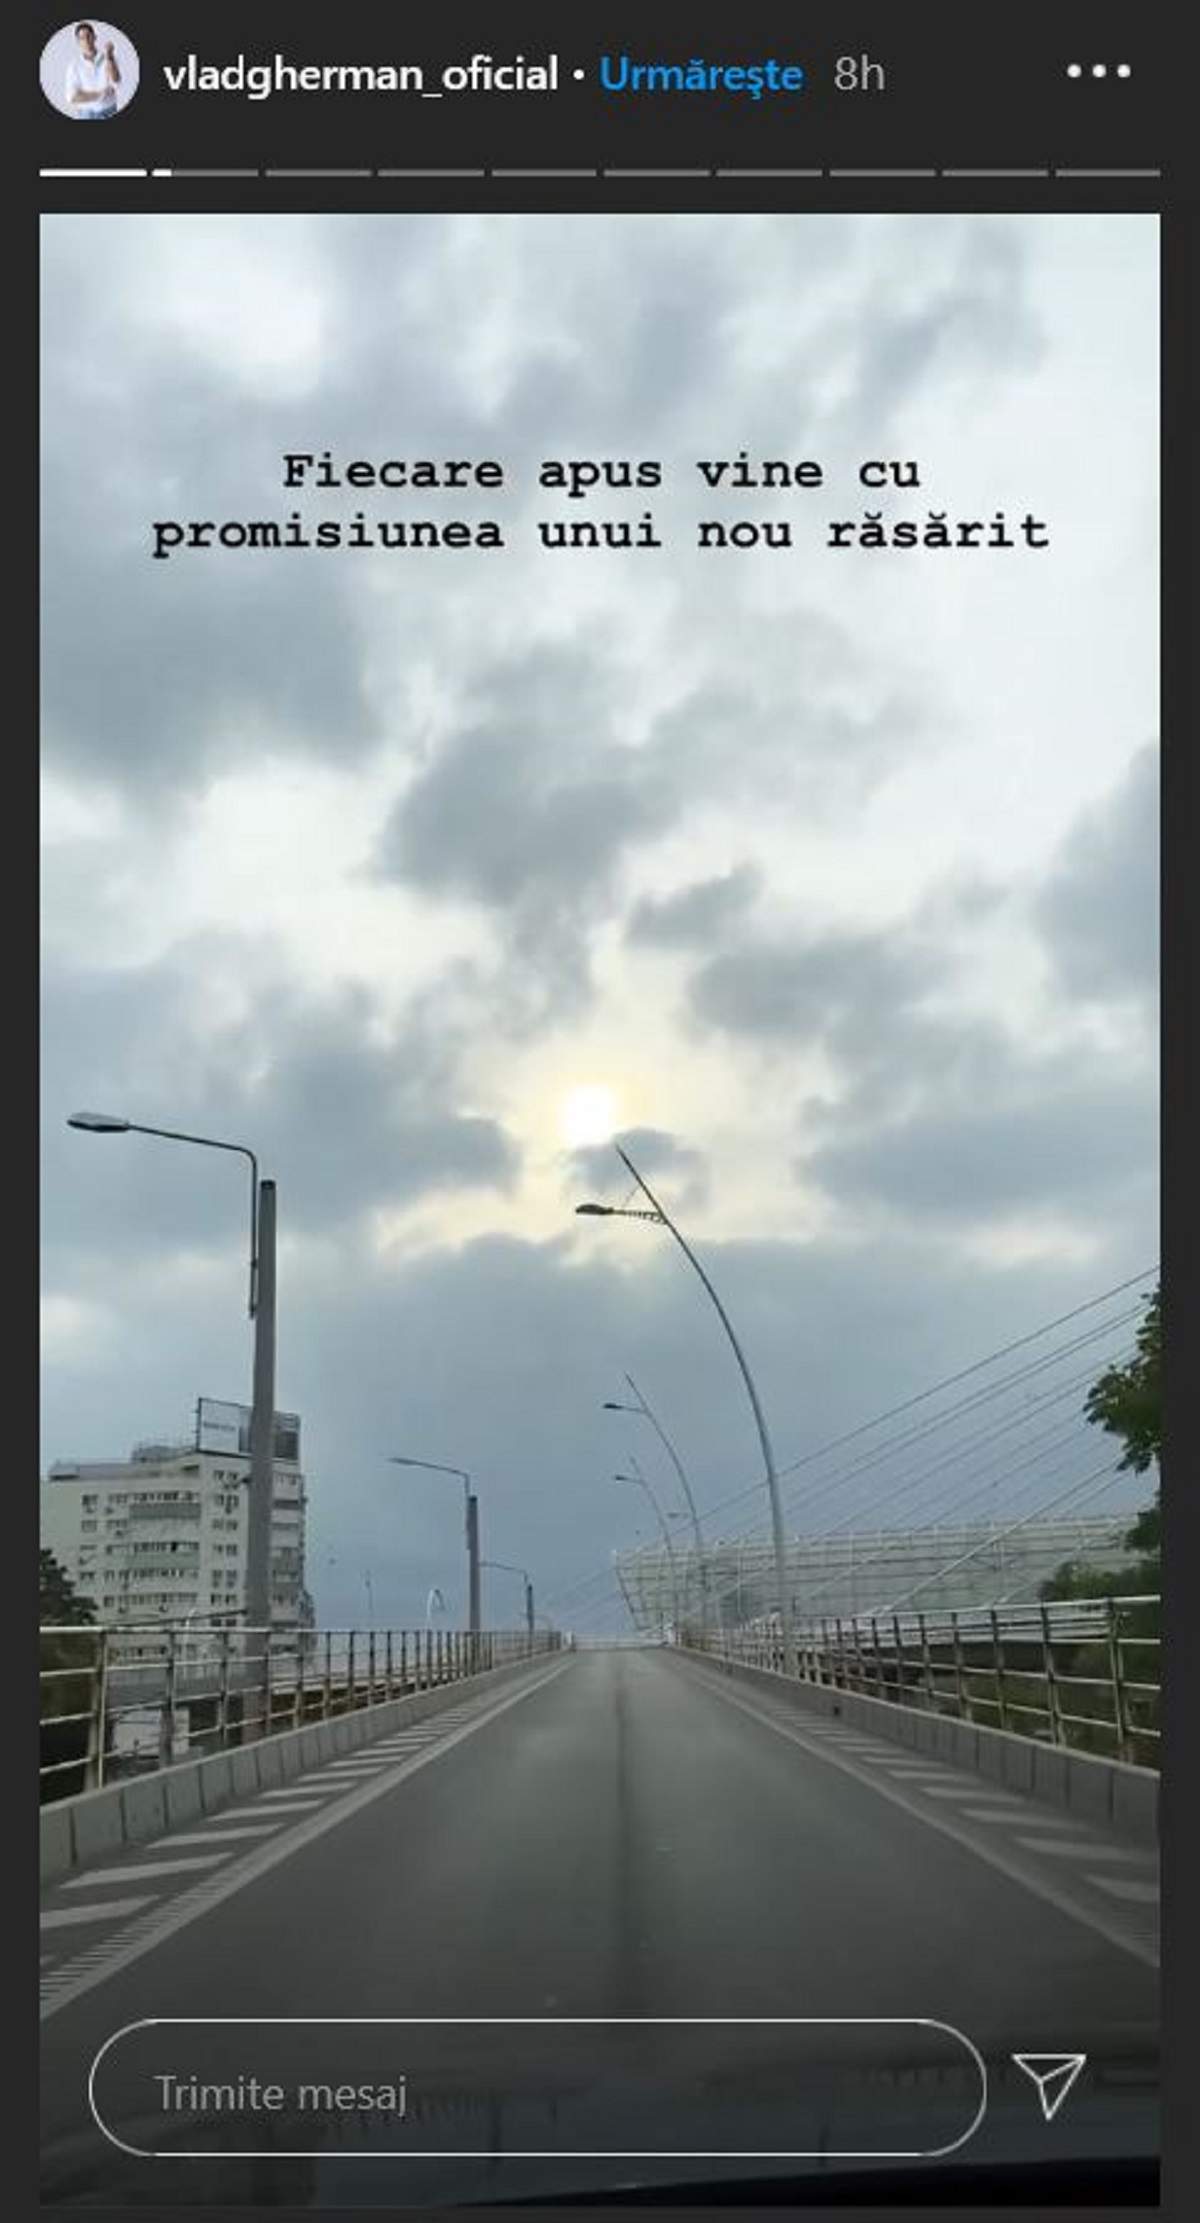 Mesajul postat de Vlad Gherman pe Instagram, după moarte bunicii. Artistul a filmat un pod.